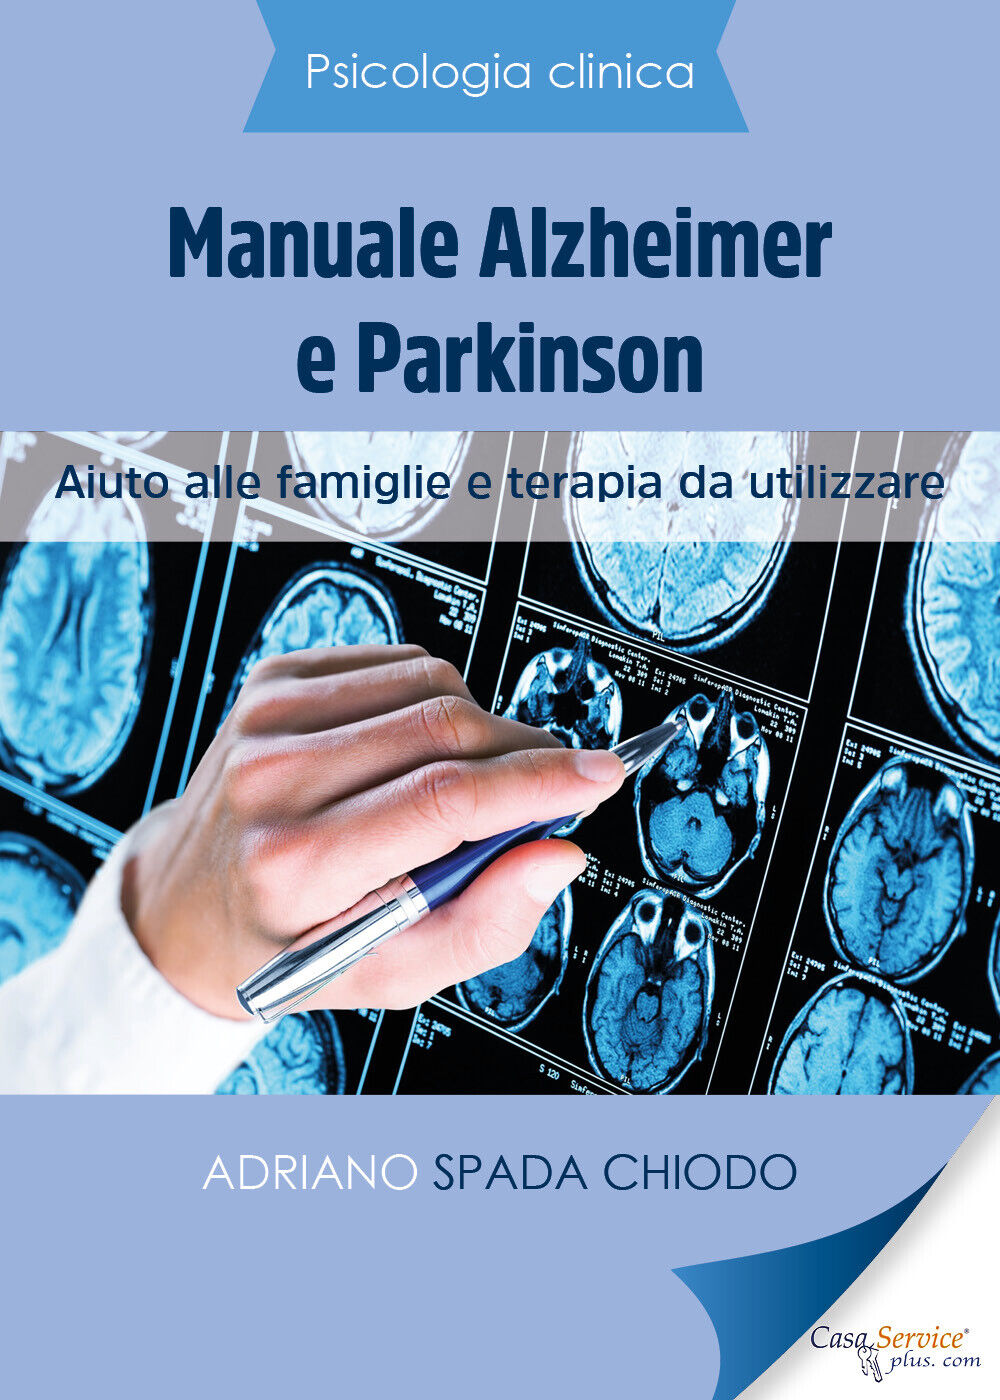 Psicologia Clinica - Manuale Alzheimer e Parkinson - Aiuto alle famiglie e terap libro usato